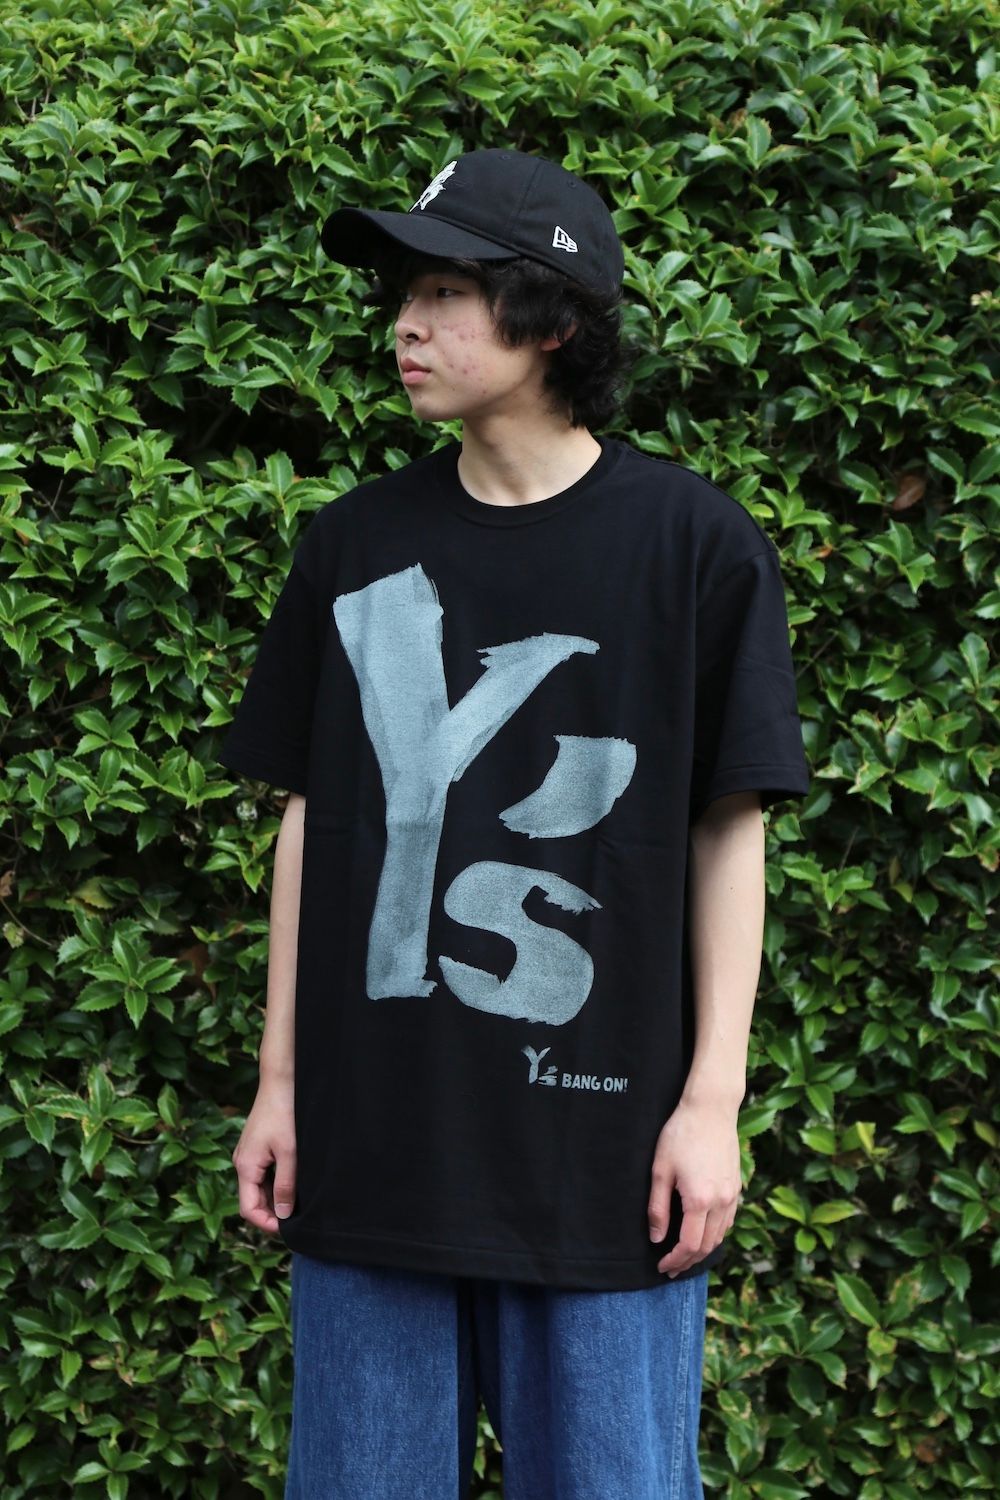 Y's BANG ON! ワイズバングオン Tシャツ・カットソー 2(M位) 黒